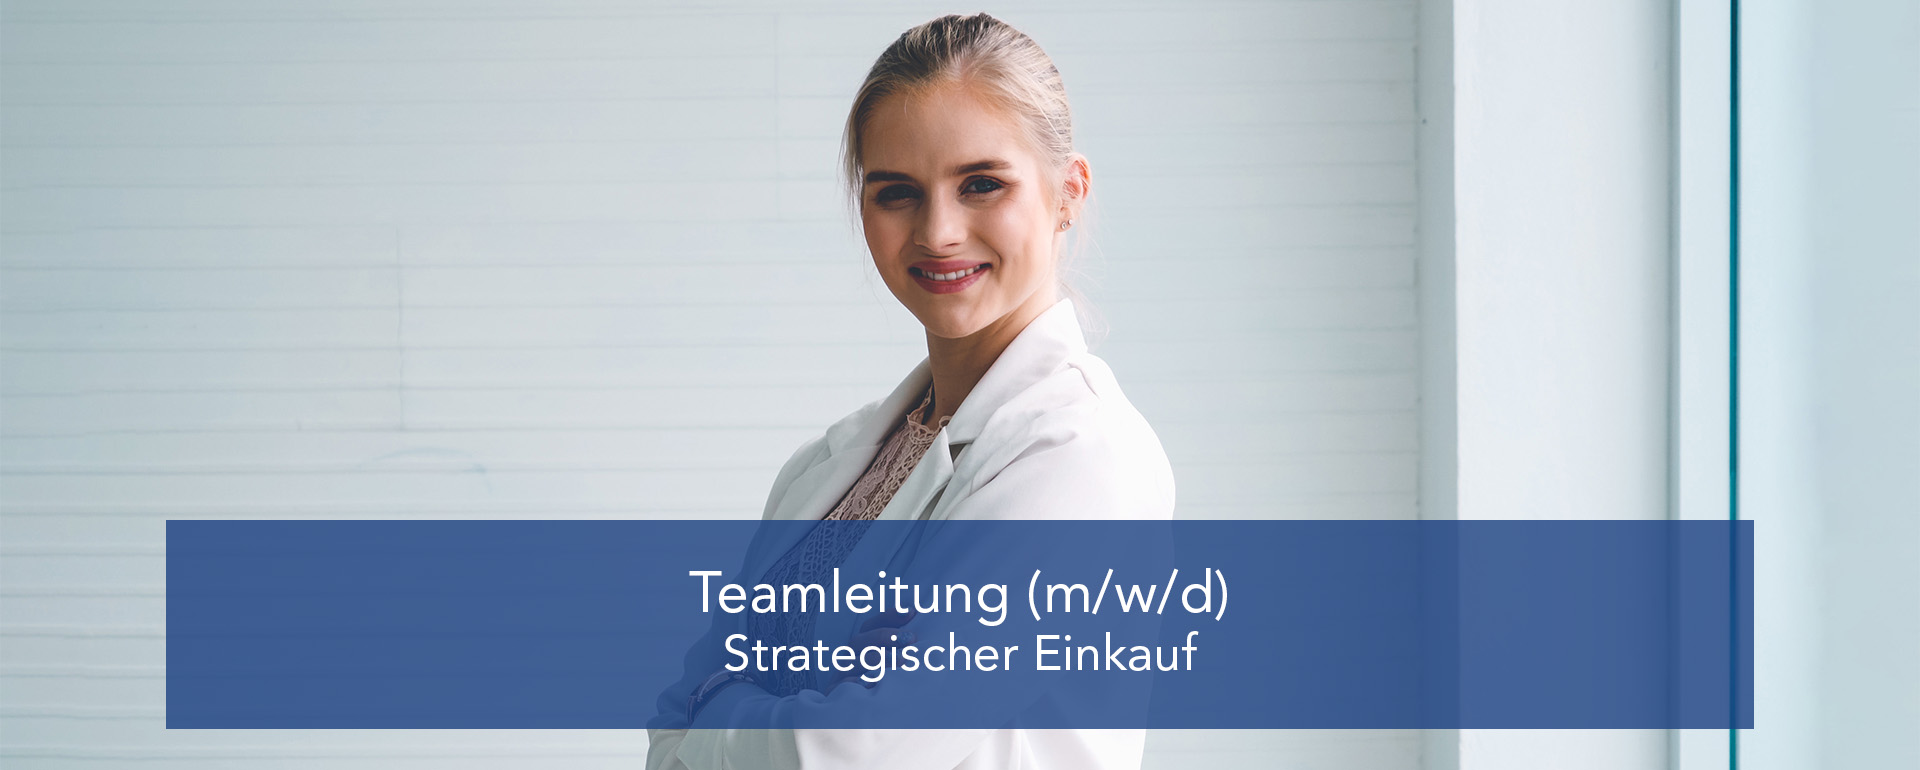 Teamleiter (m/w/d) – Strategischer Einkauf